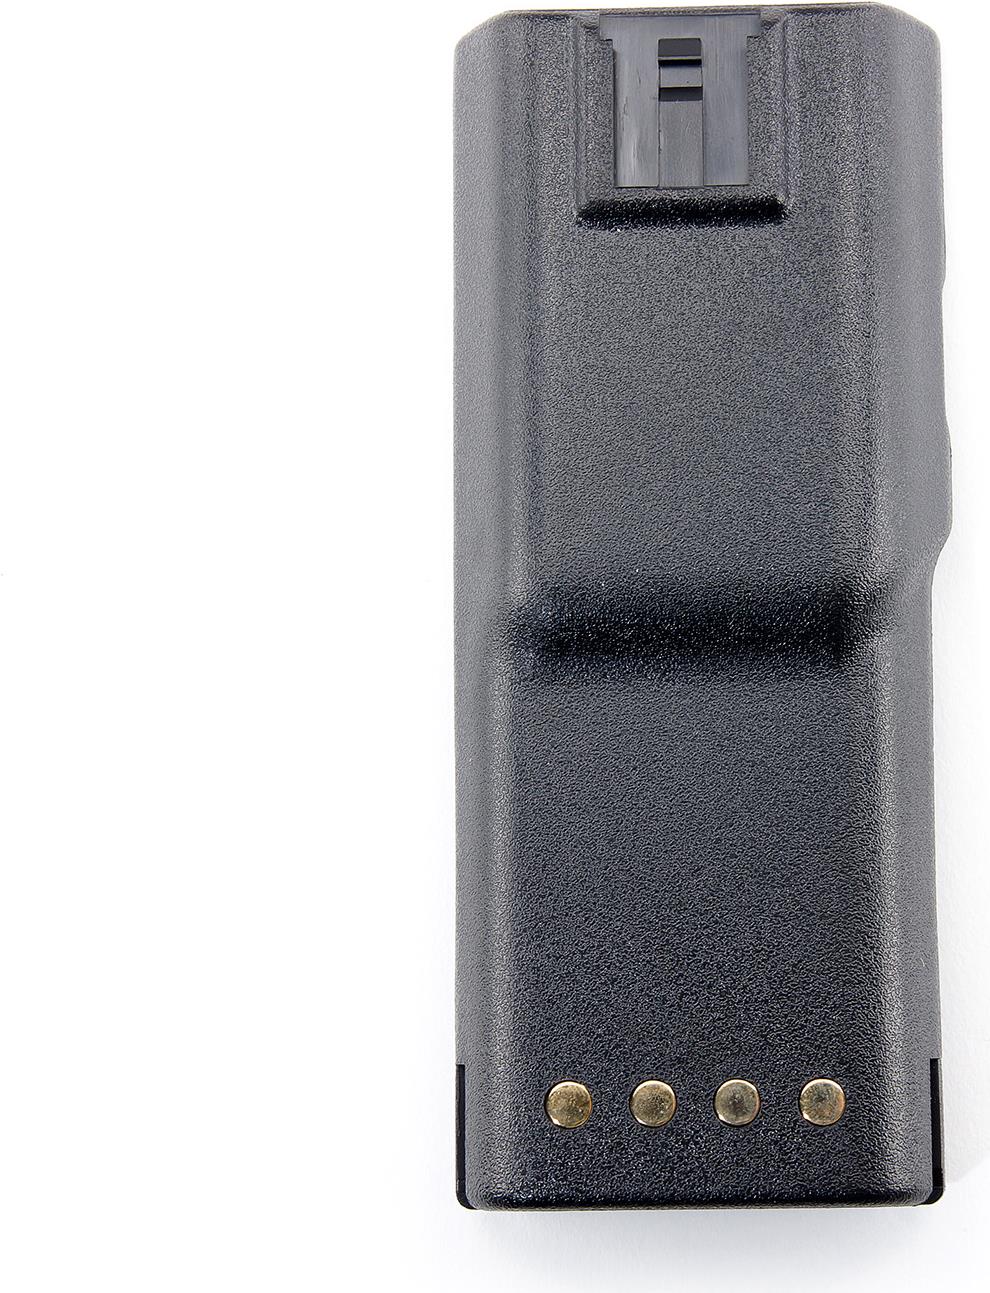 BatStar NiMH-Akku, 2200 mAh, 7,5 V, für Motorola GP300/GP600 LxBxH: 14,15 x 5,81x 1,81 cm, kompatibel zu Original-AkkuWPNN4040. ACHTUNG! Lieferumfang ab 2015: OHNE Clip!Zum Laden des Akkus werden die BatStar Ladegeräte BSC-4613(#160918) oder BSC-2001